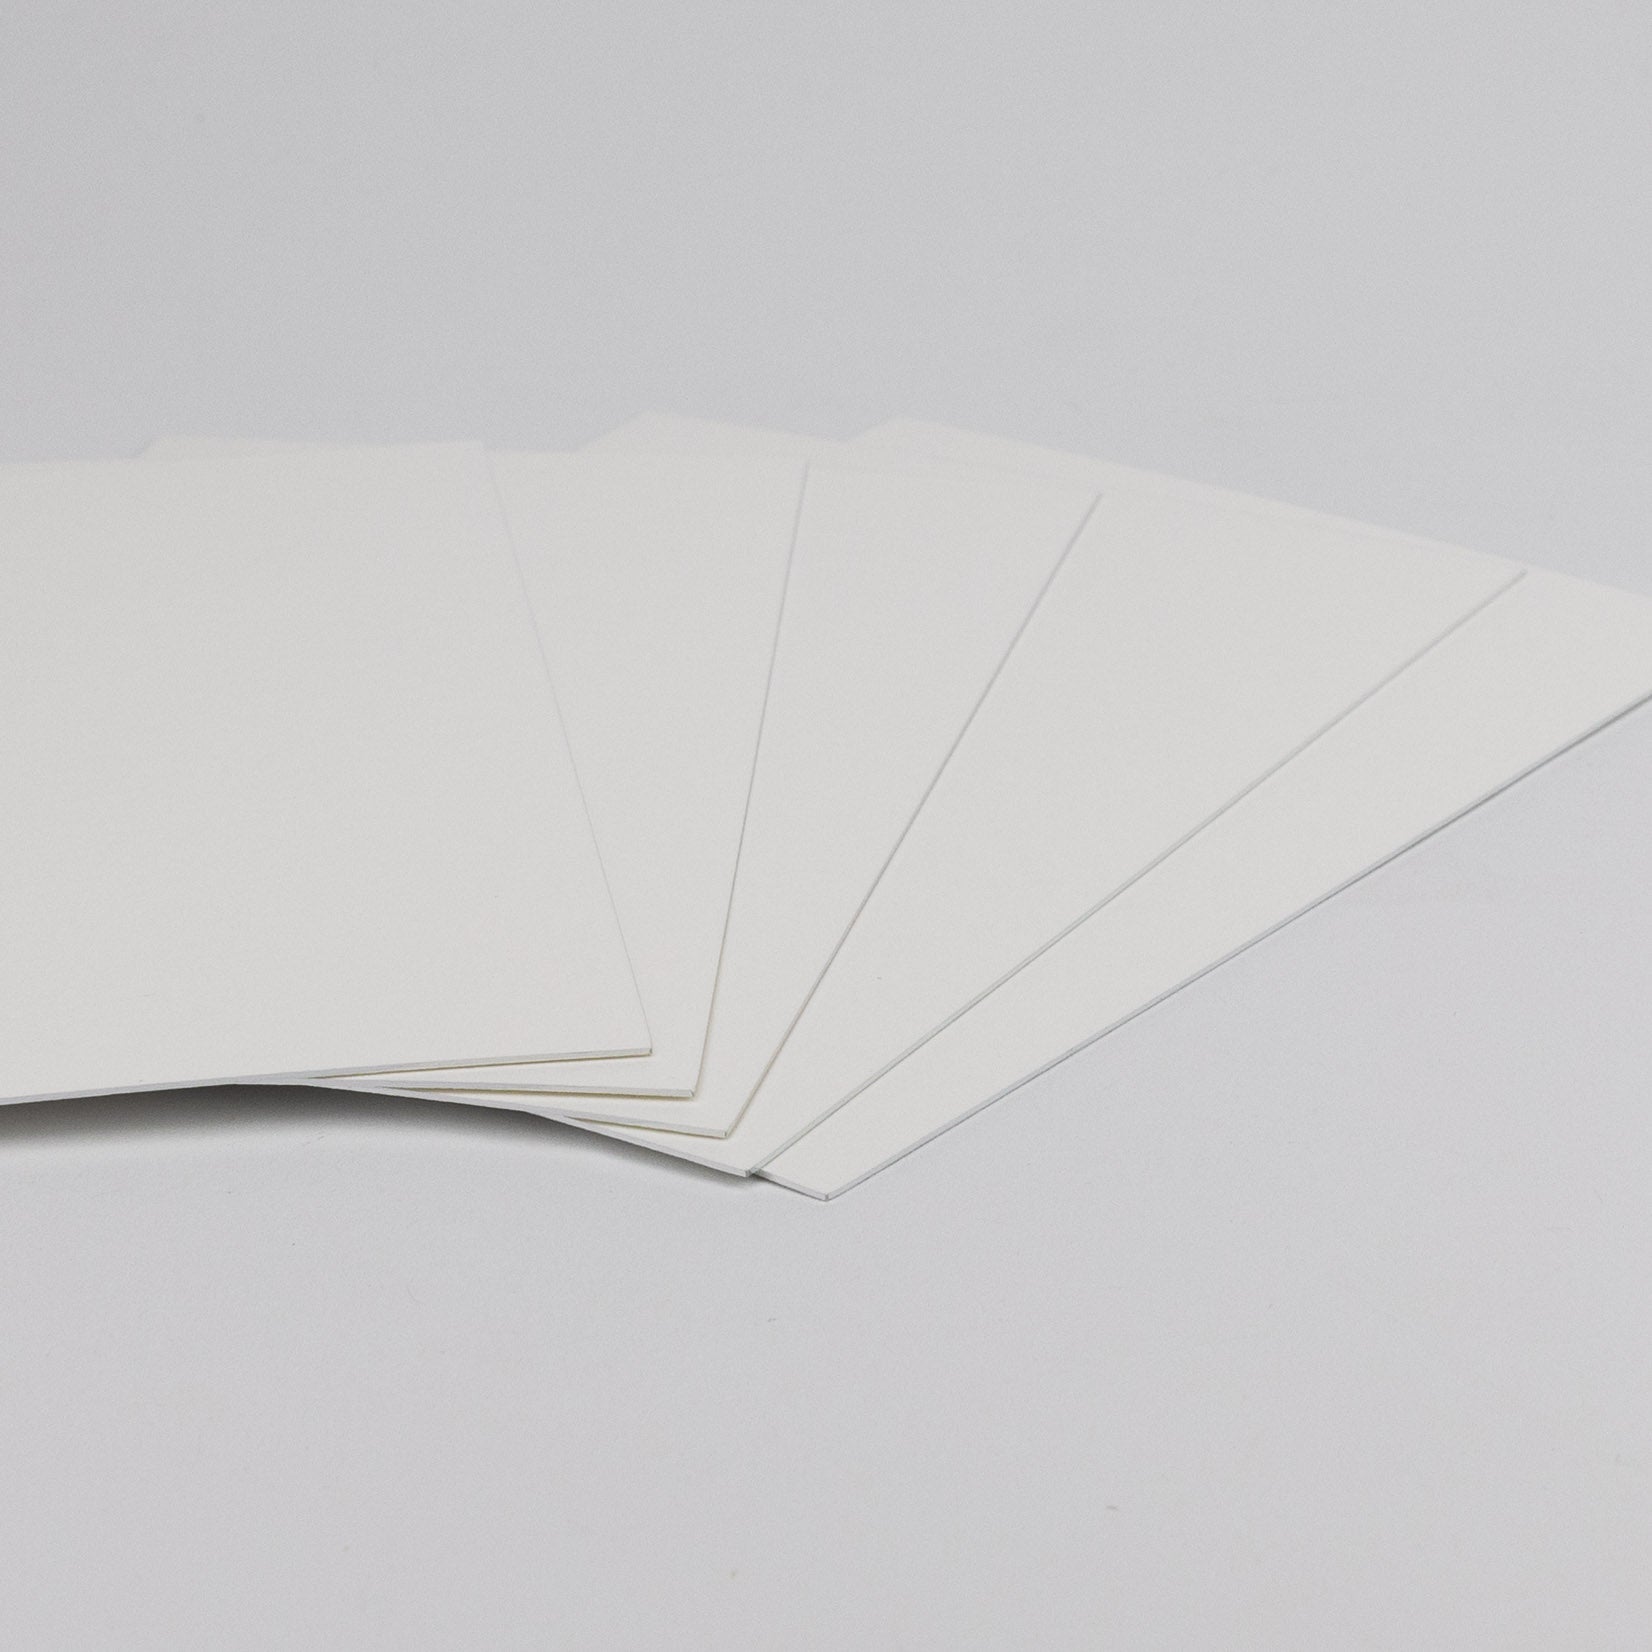 Werkstatt Höflich Letterpress Gestalten Postkarten Blanko Karten Farbschnitt silber